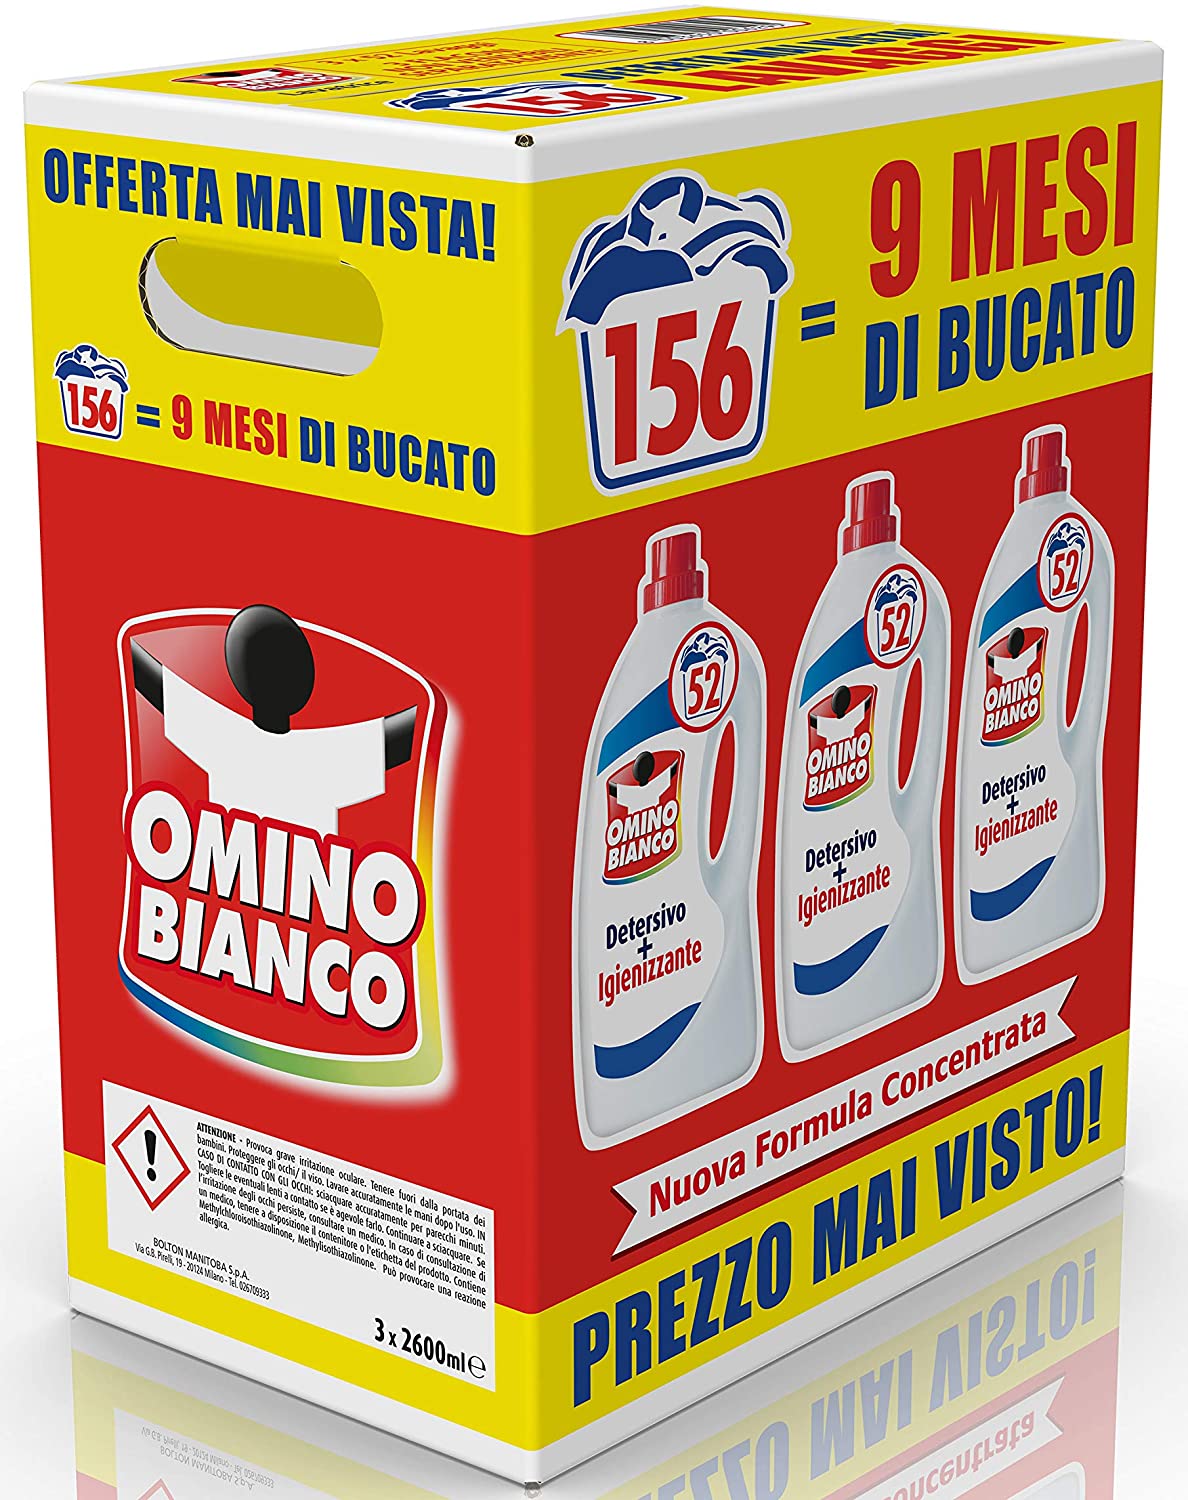 Omino Bianco Detersivo Lavatrice Igienizzante Liquido